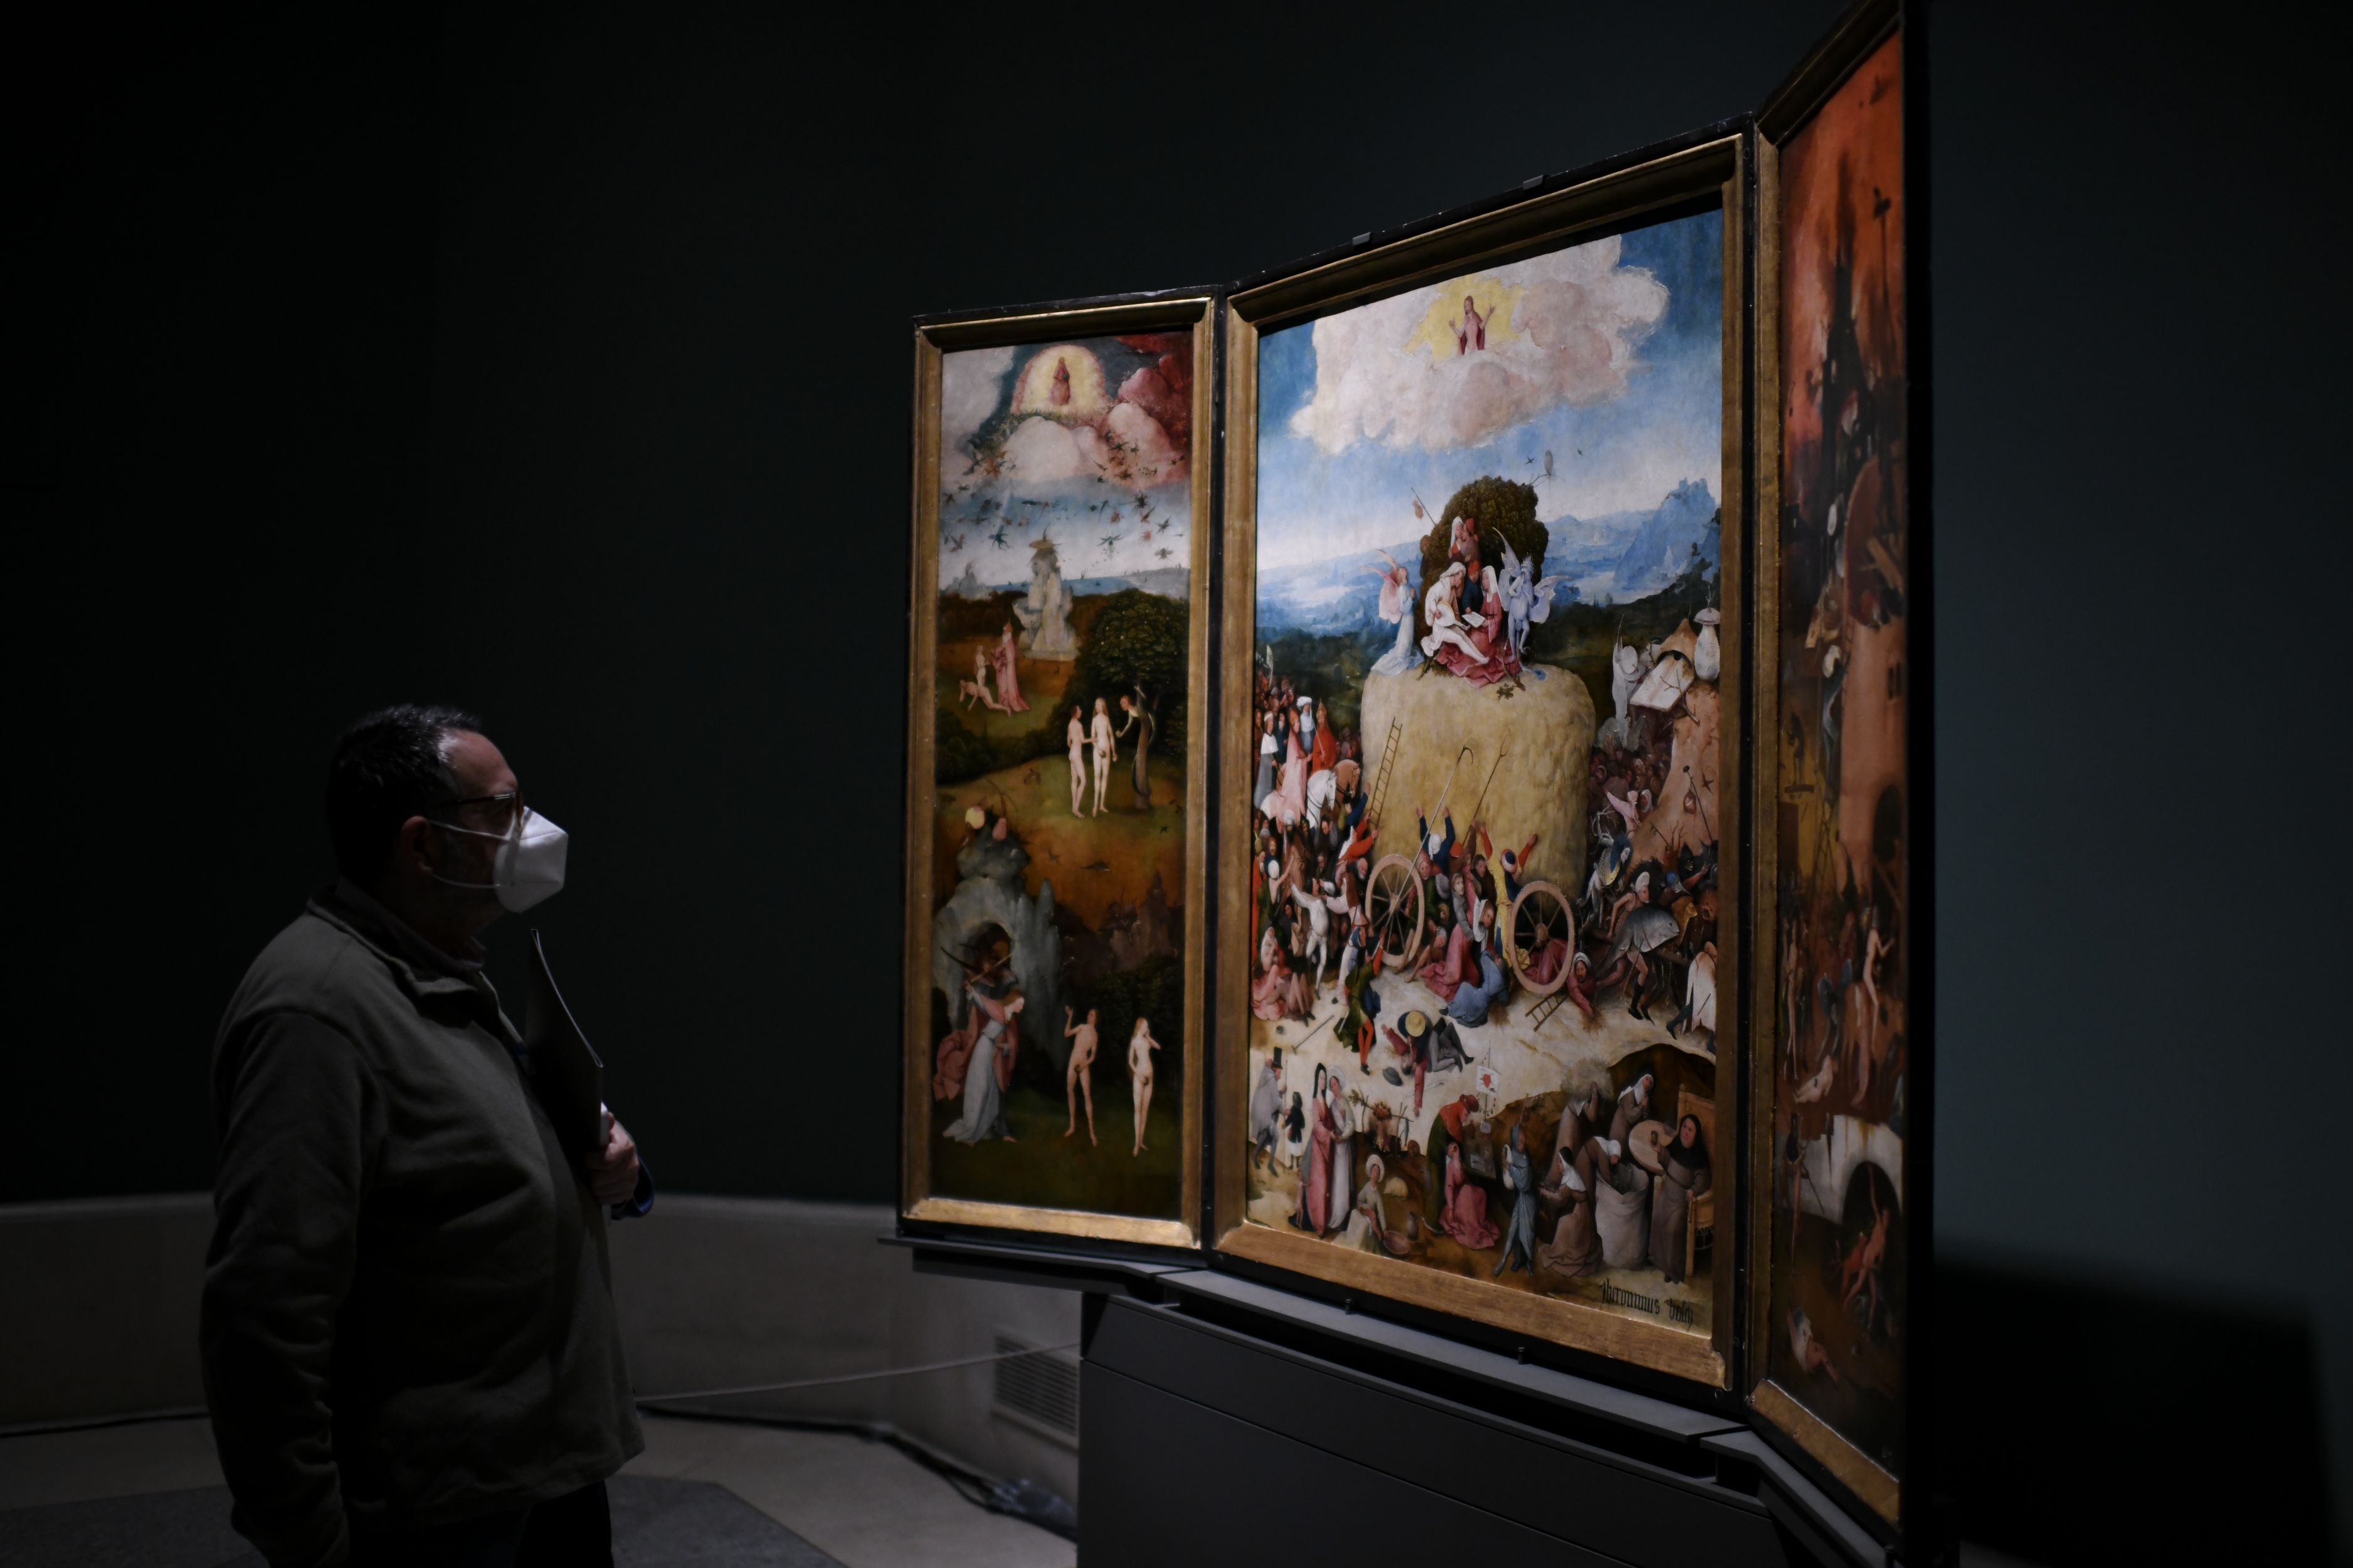 El Museo del Prado organiza actividades para mayores y personas con deterioro cognitivo